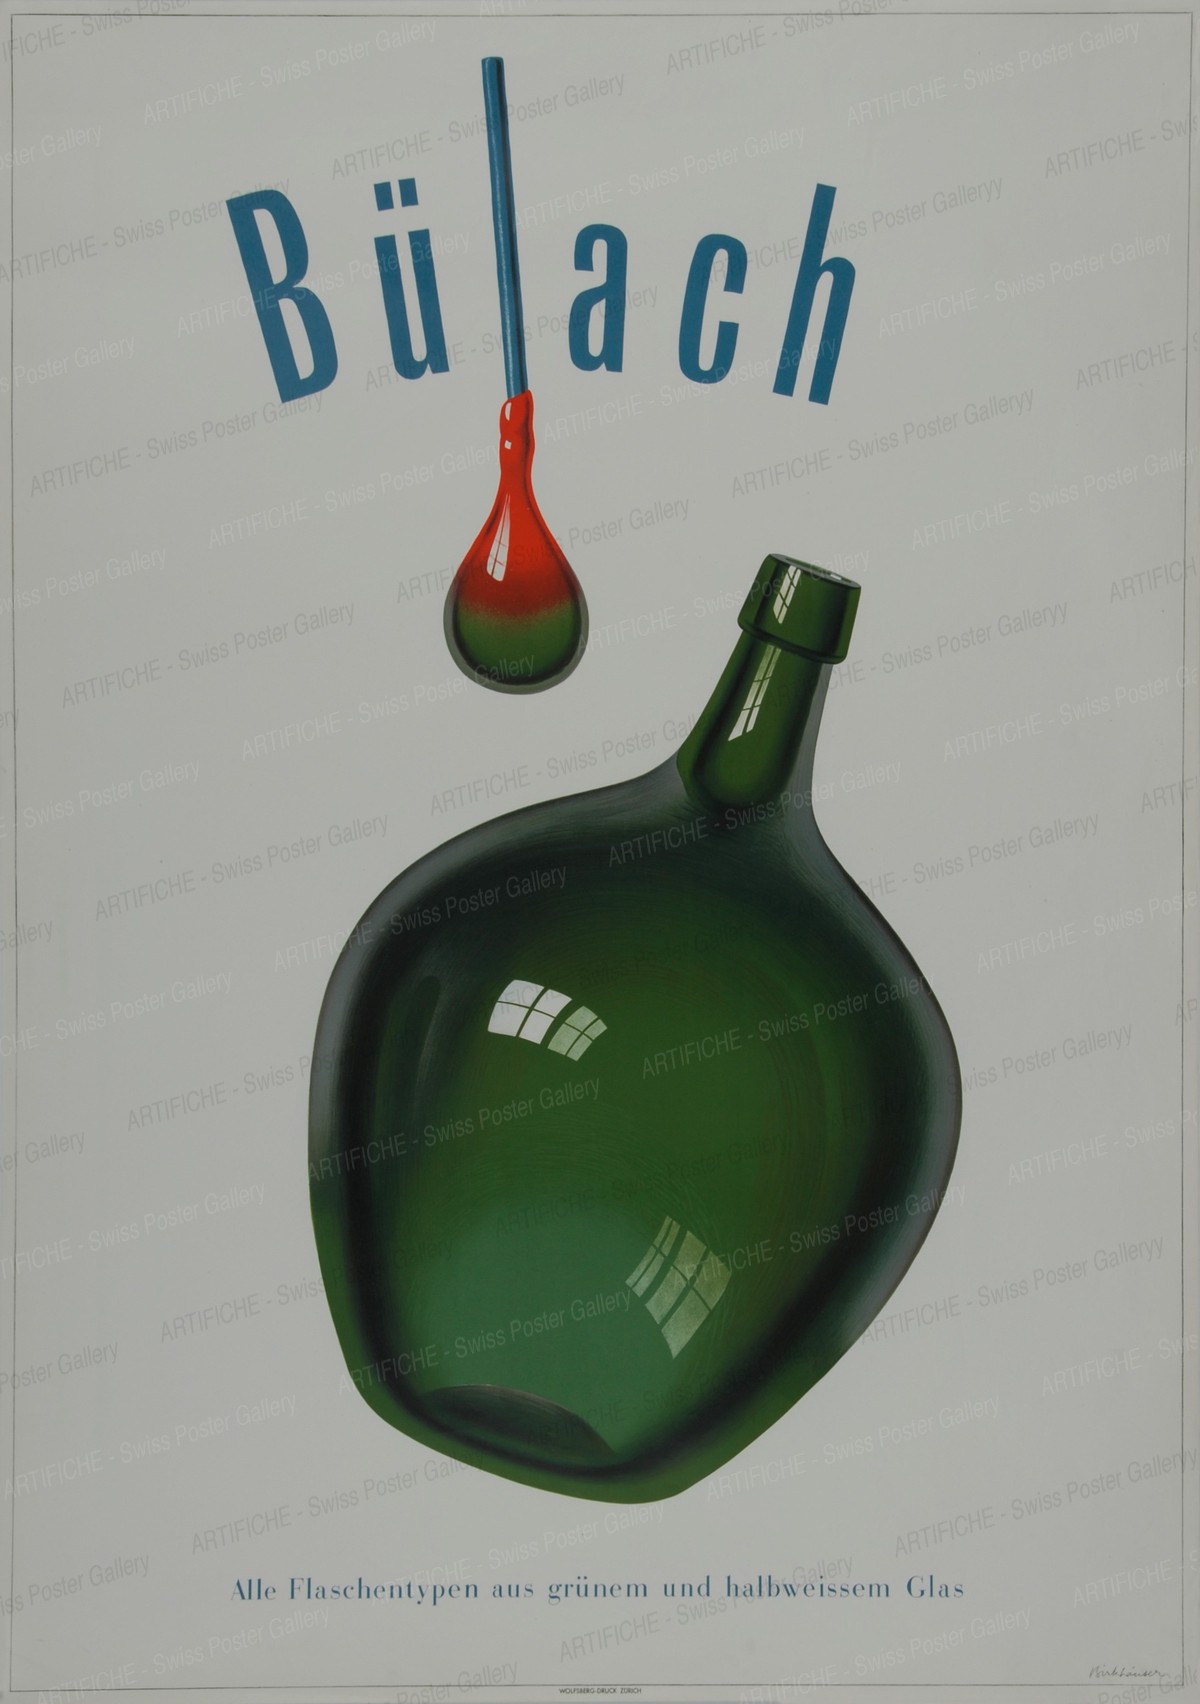 Bülach – Alle Flaschentypen aus grünem und halbweissem Glas, Peter Birkhäuser